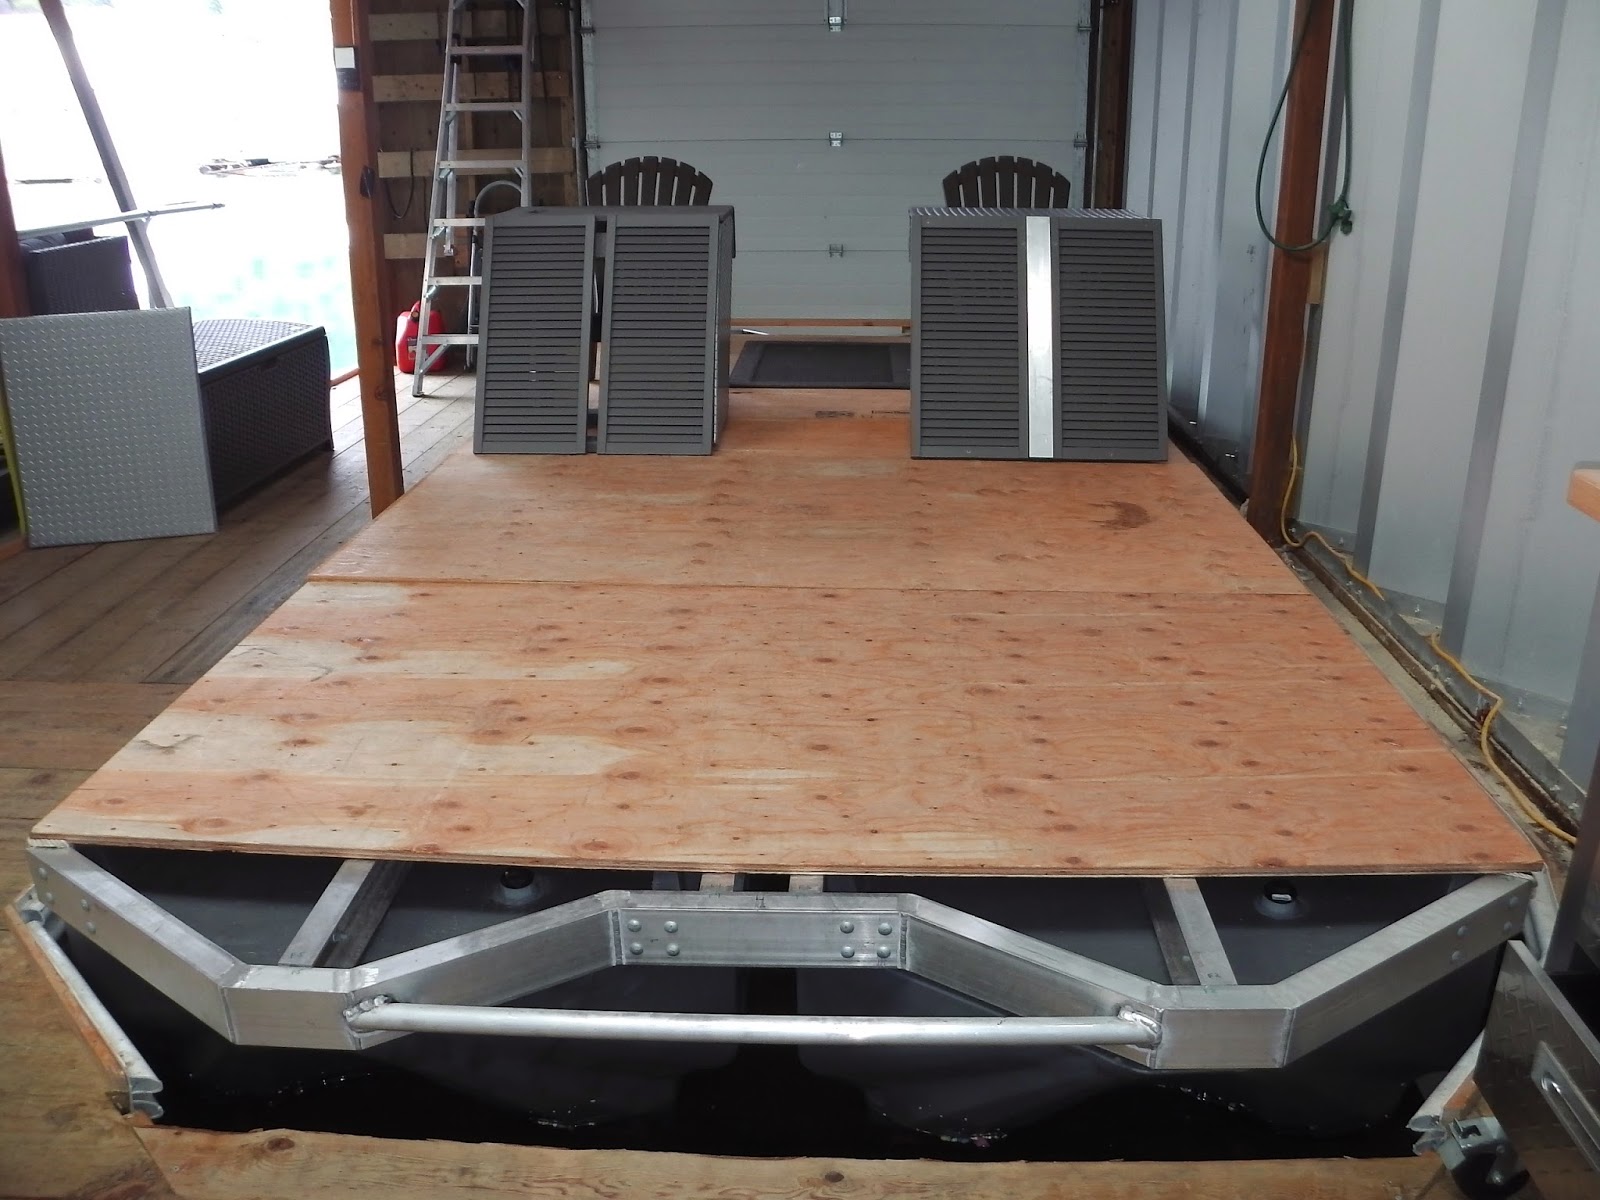 Pontoonstuff ® created the idea of pontoon flooring kits and deck kits to m...